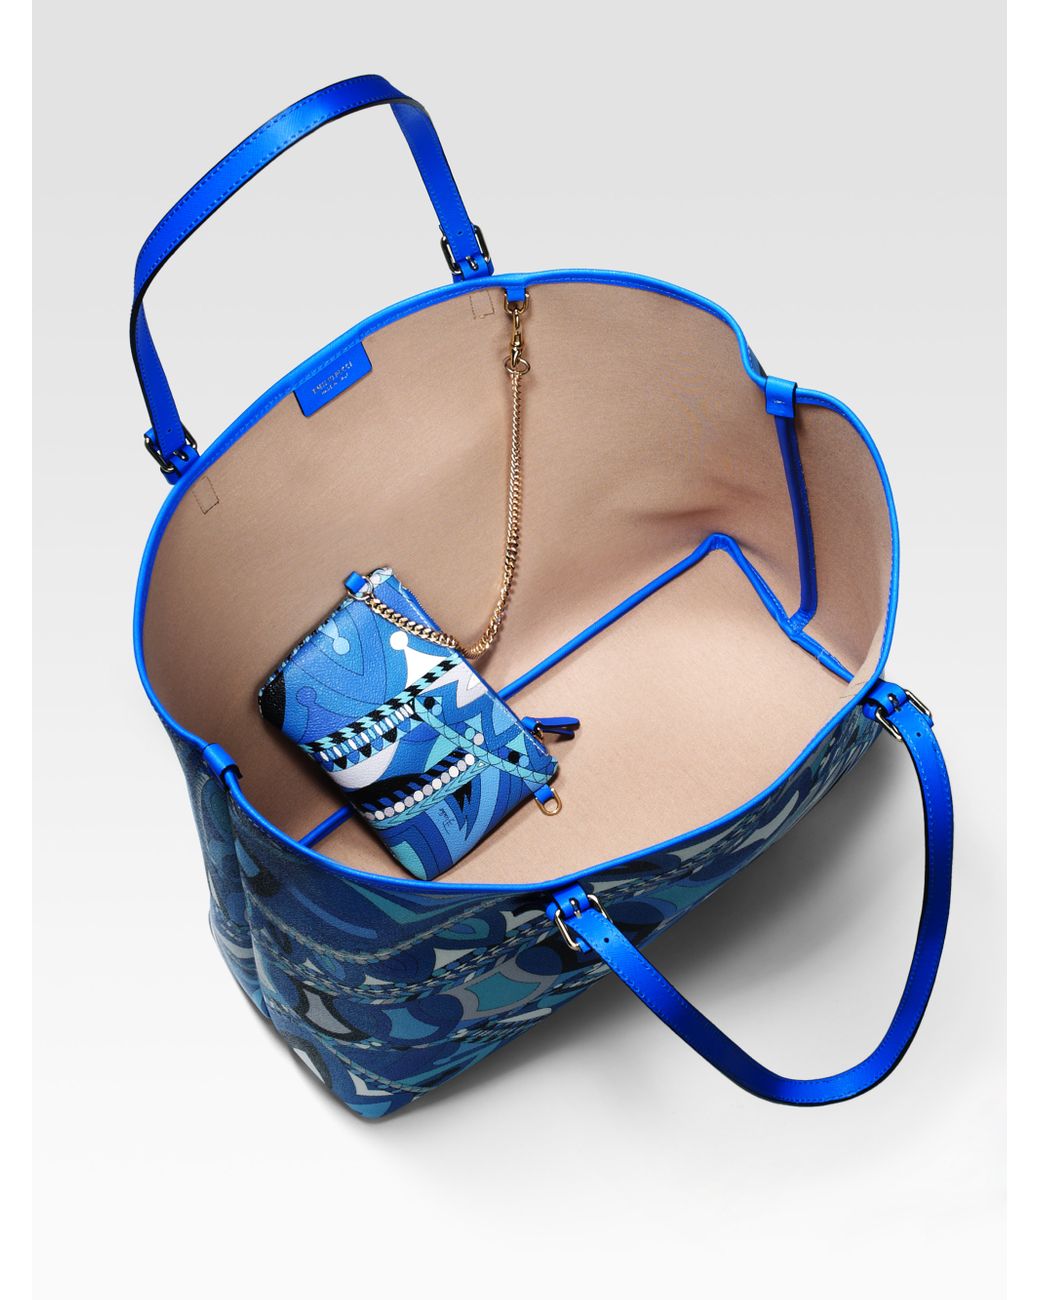 Emilio Pucci tote bag blue small 12.5 inches